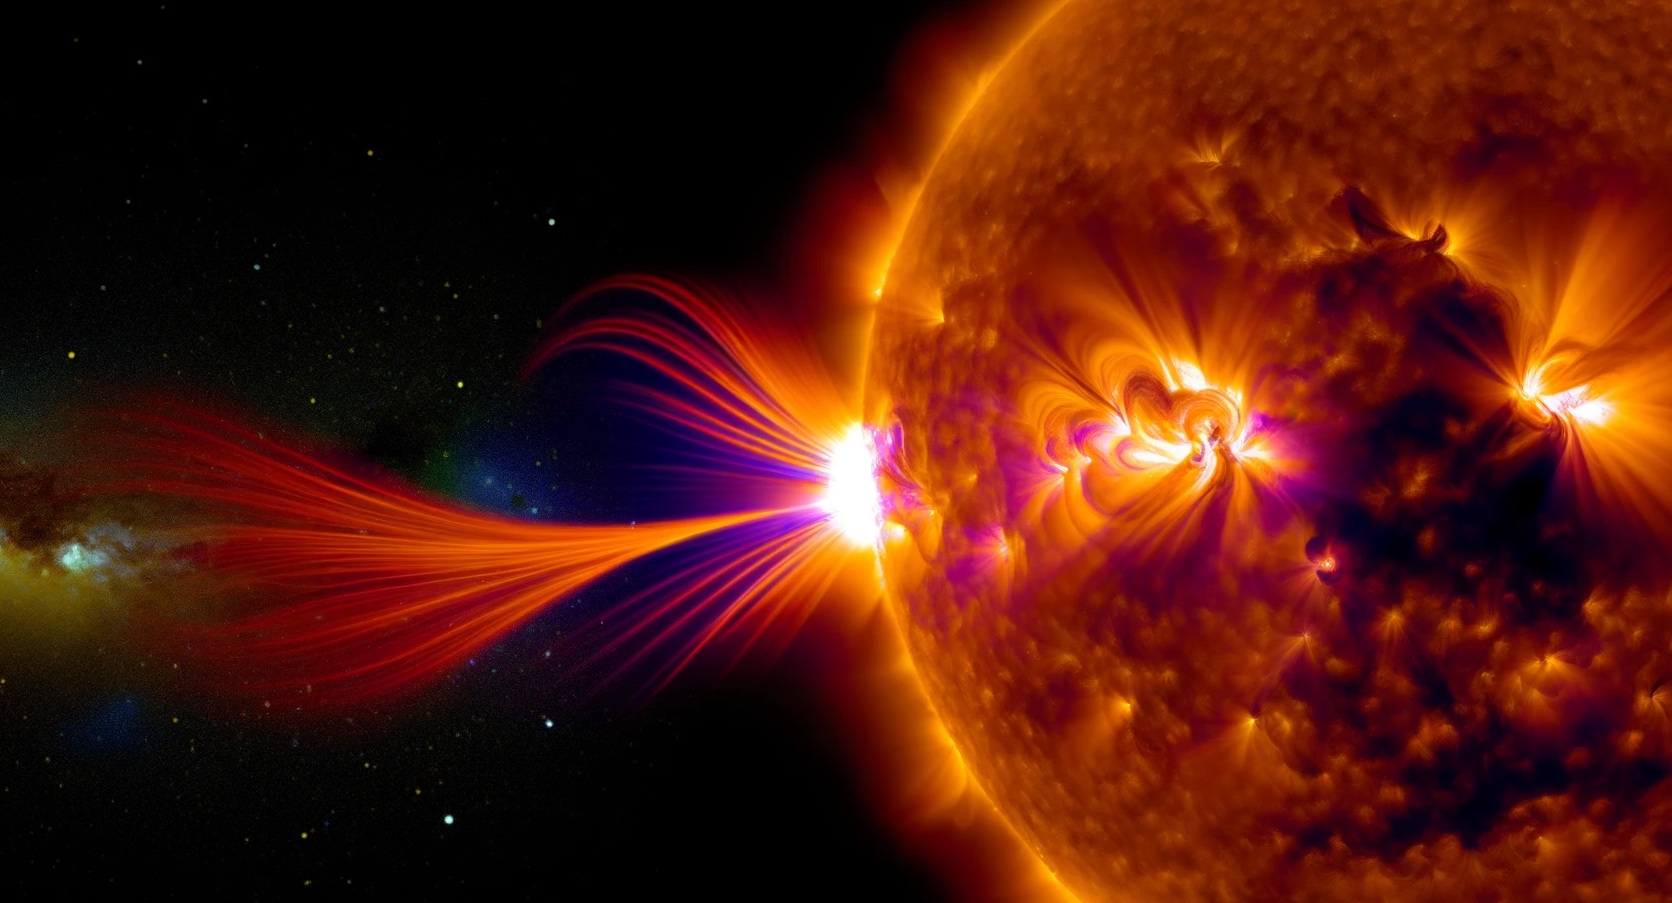 Une éruption solaire majeure connectée magnétiquement avec la Terre. © XD, Futura avec DALL-E